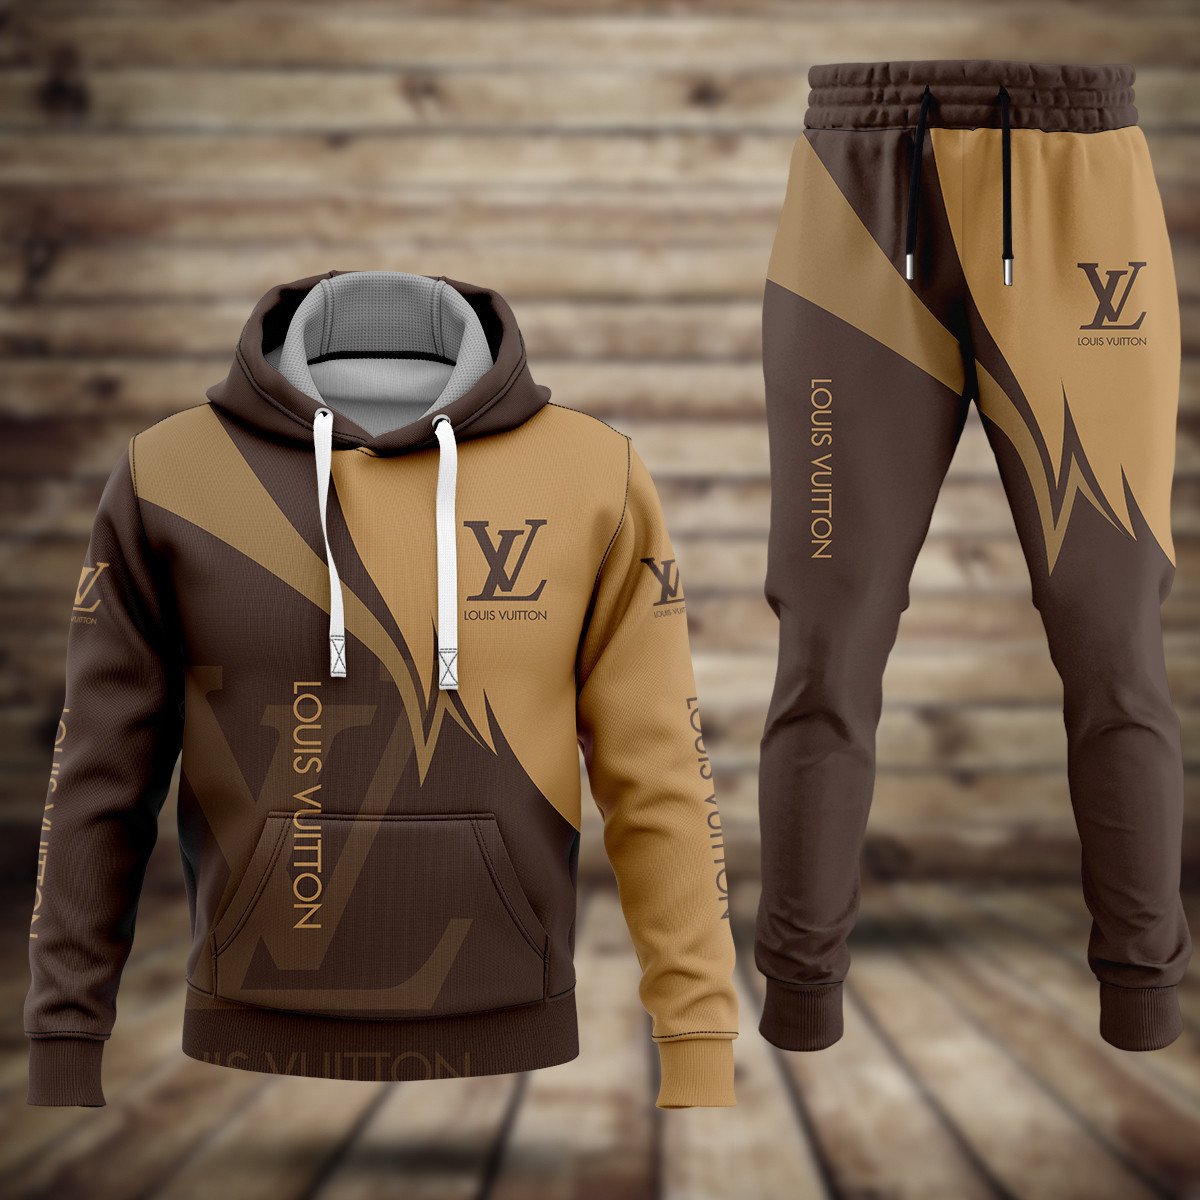 TRENDING] Louis Vuitton Brown Hoodie Leggings Luxury Brand LV Clothing